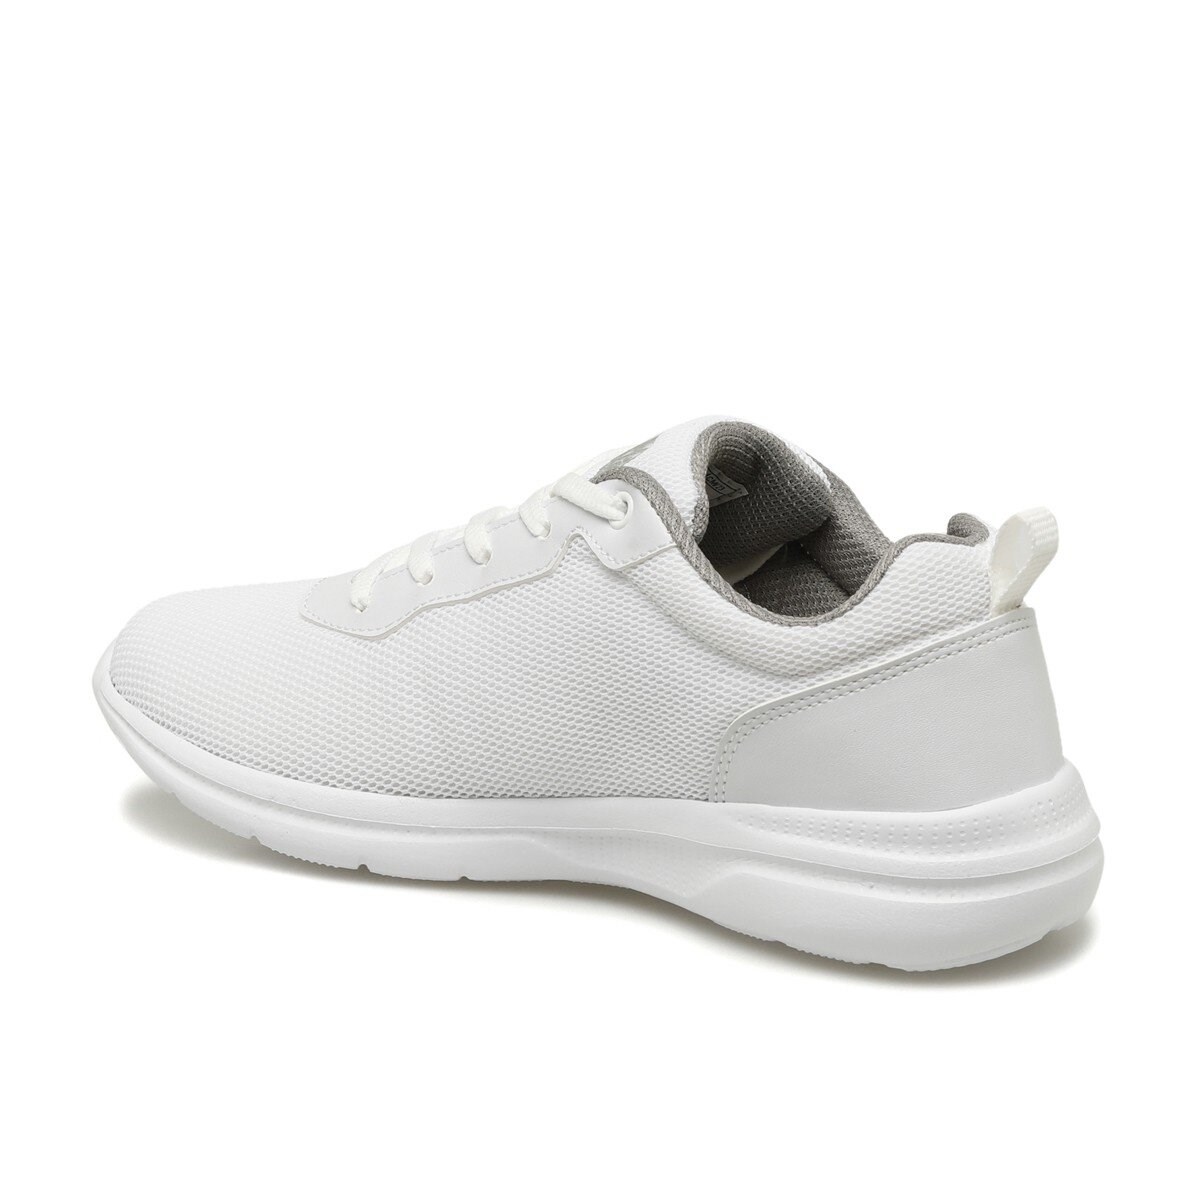 U.S Polo Kadın Ayakkabı 100605101 Beyaz-Grı